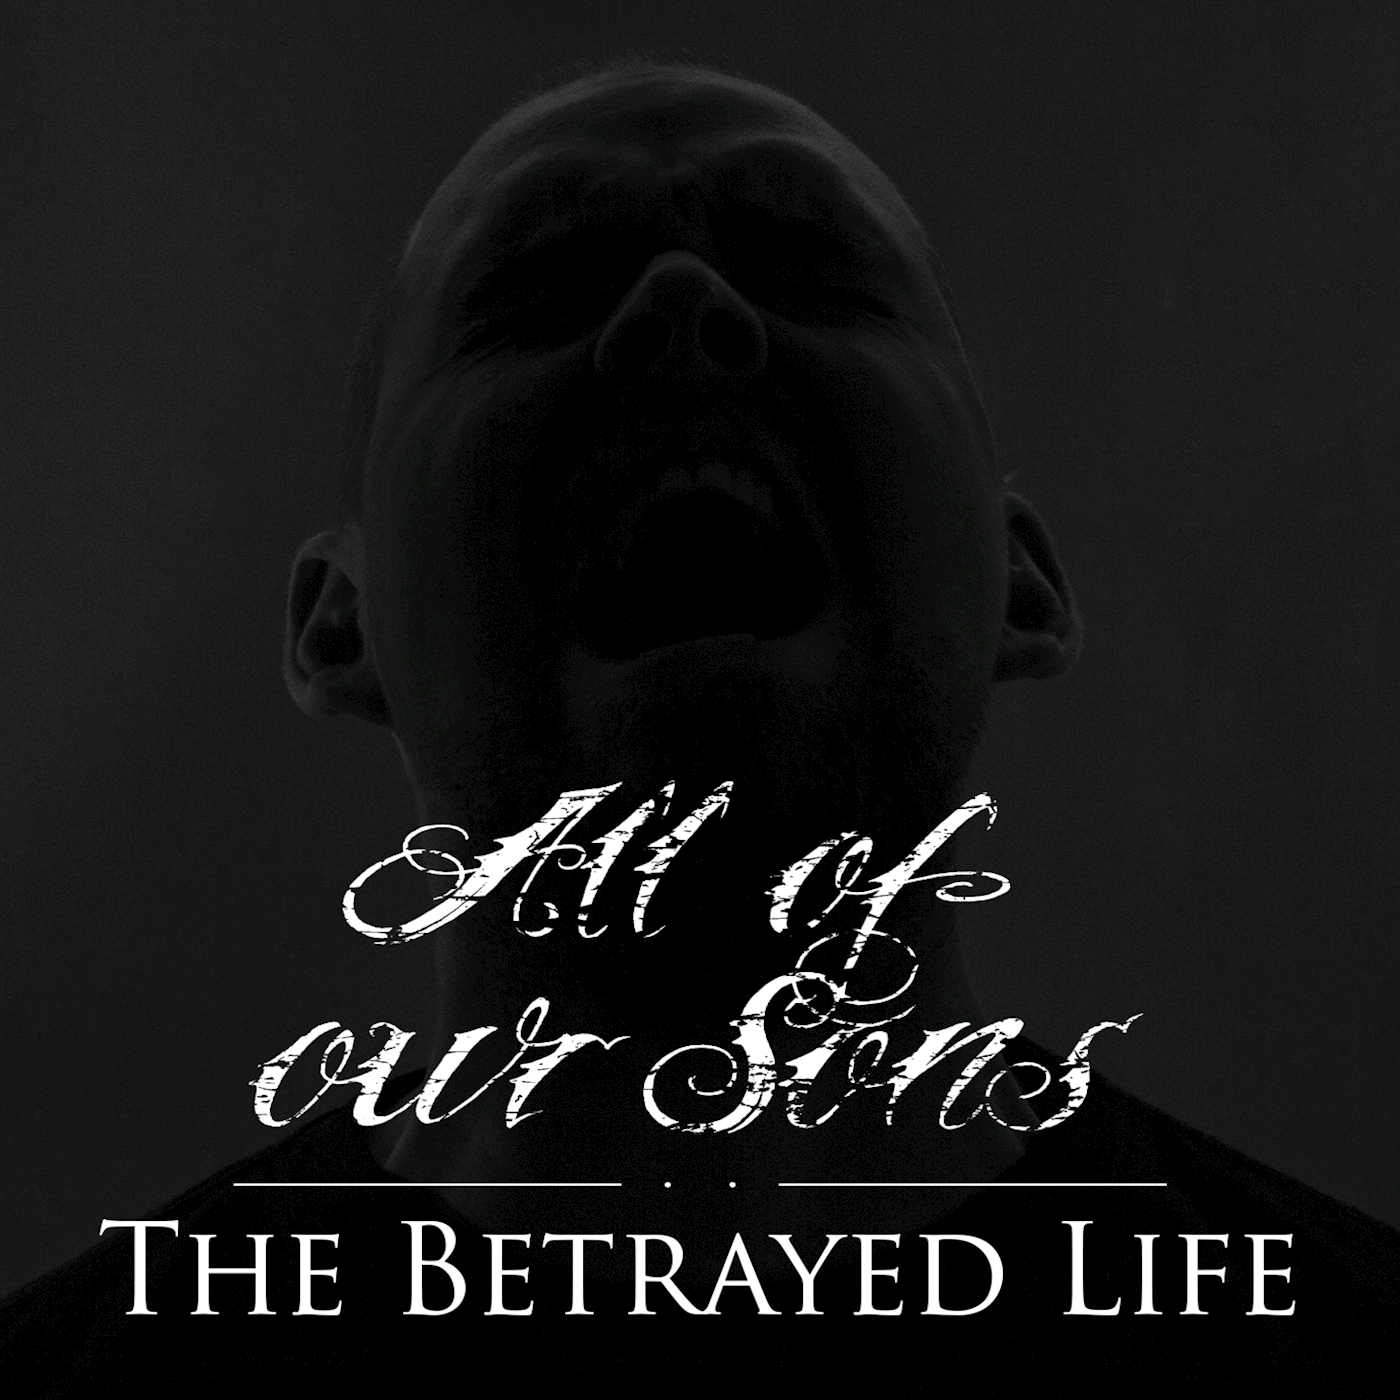 The Betrayed Life